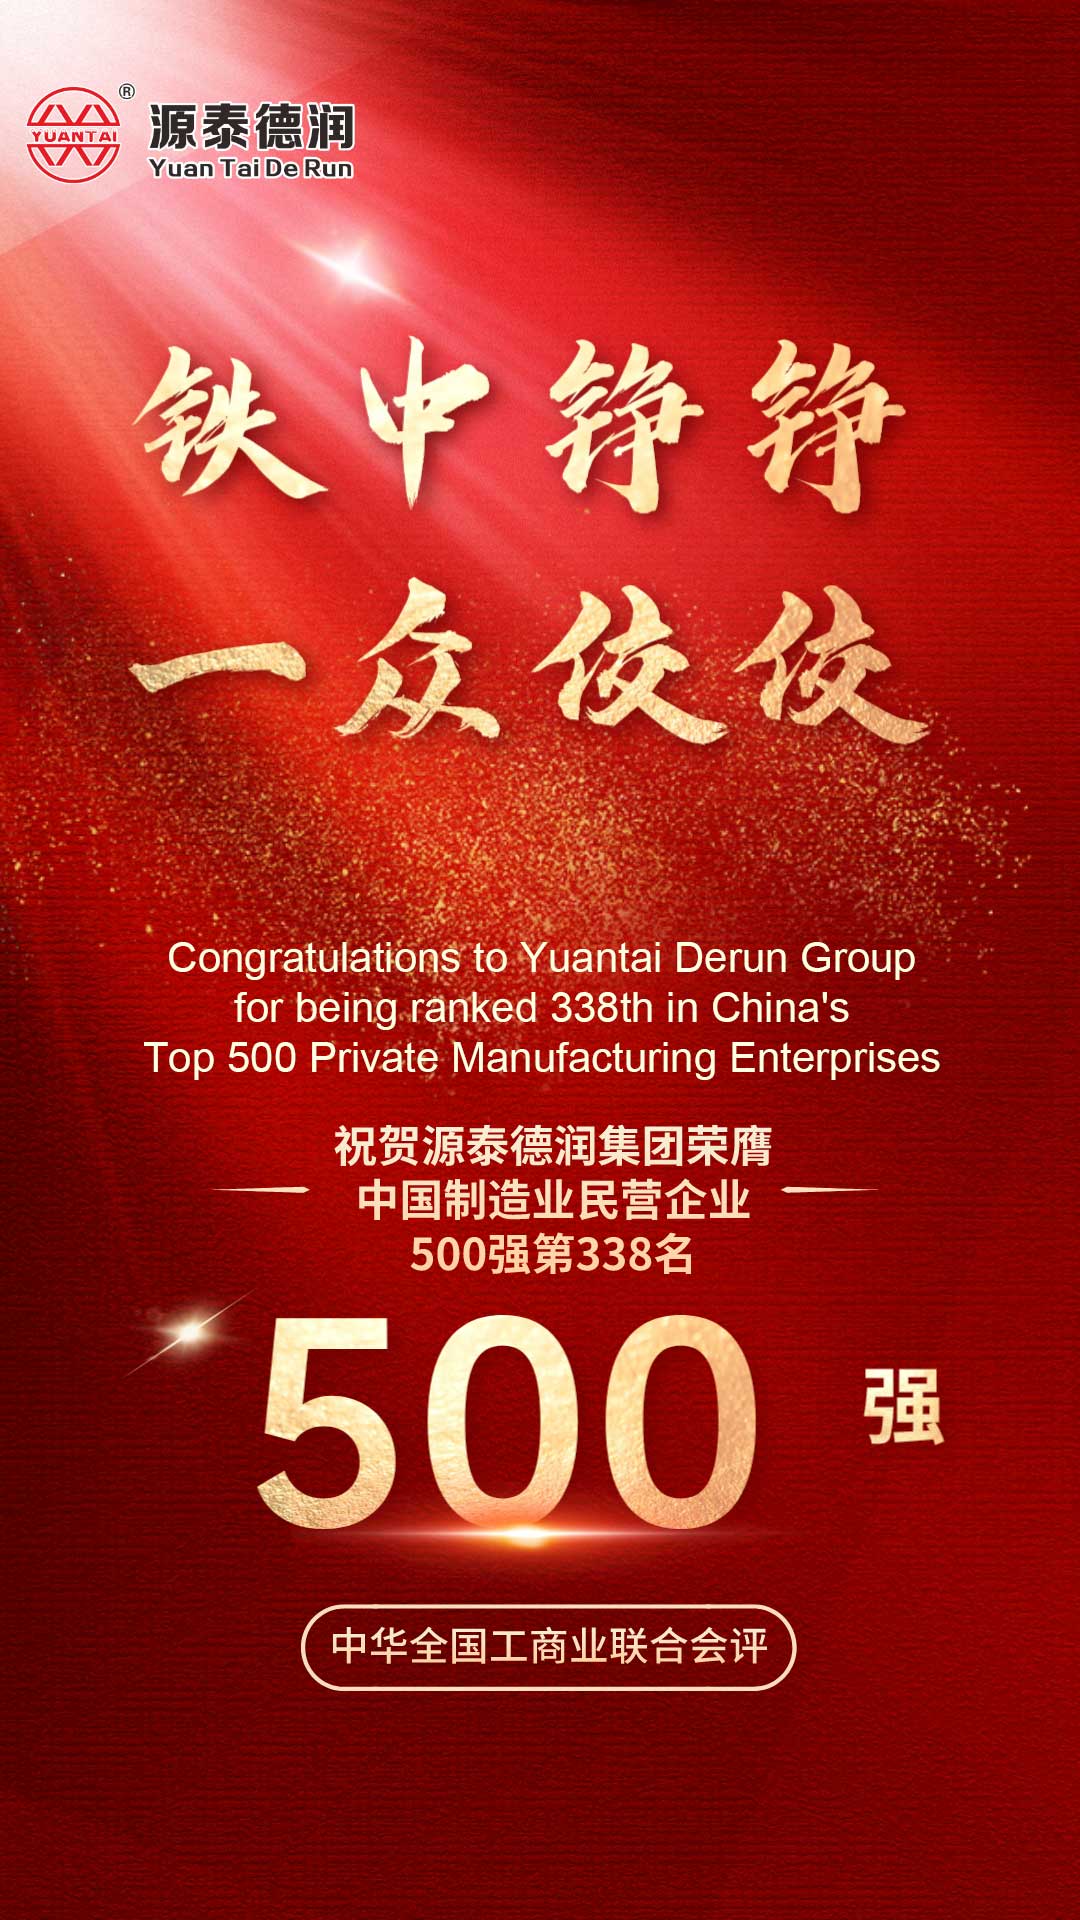 מזל טוב!Tianjin Yuantai Derun Group זכתה בכבוד להיות רשומה ב